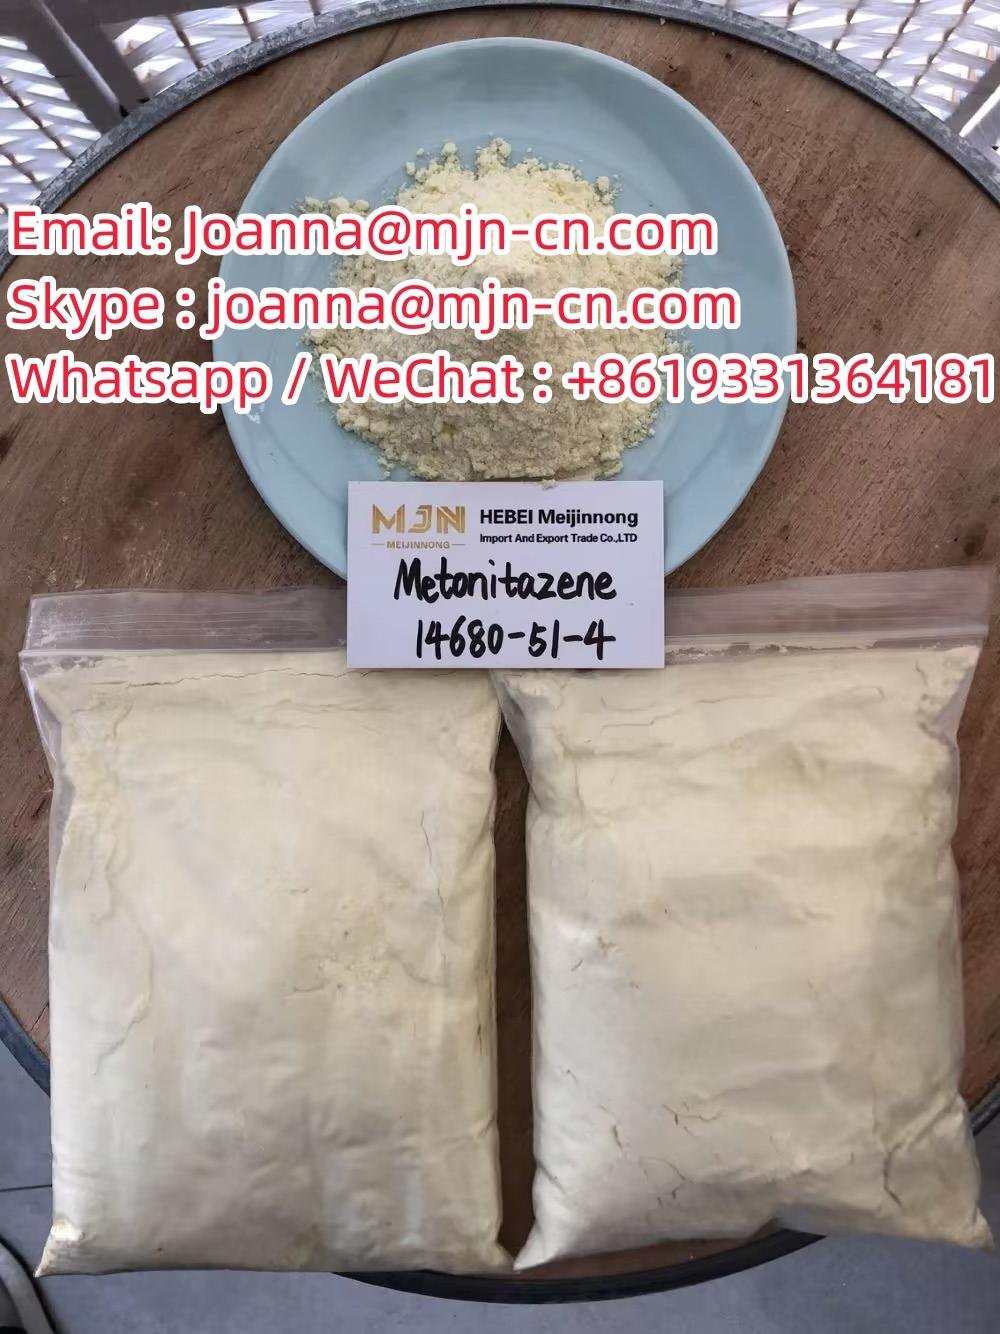 Raw materials Metonitazene CAS:14680-51-4 white powder 